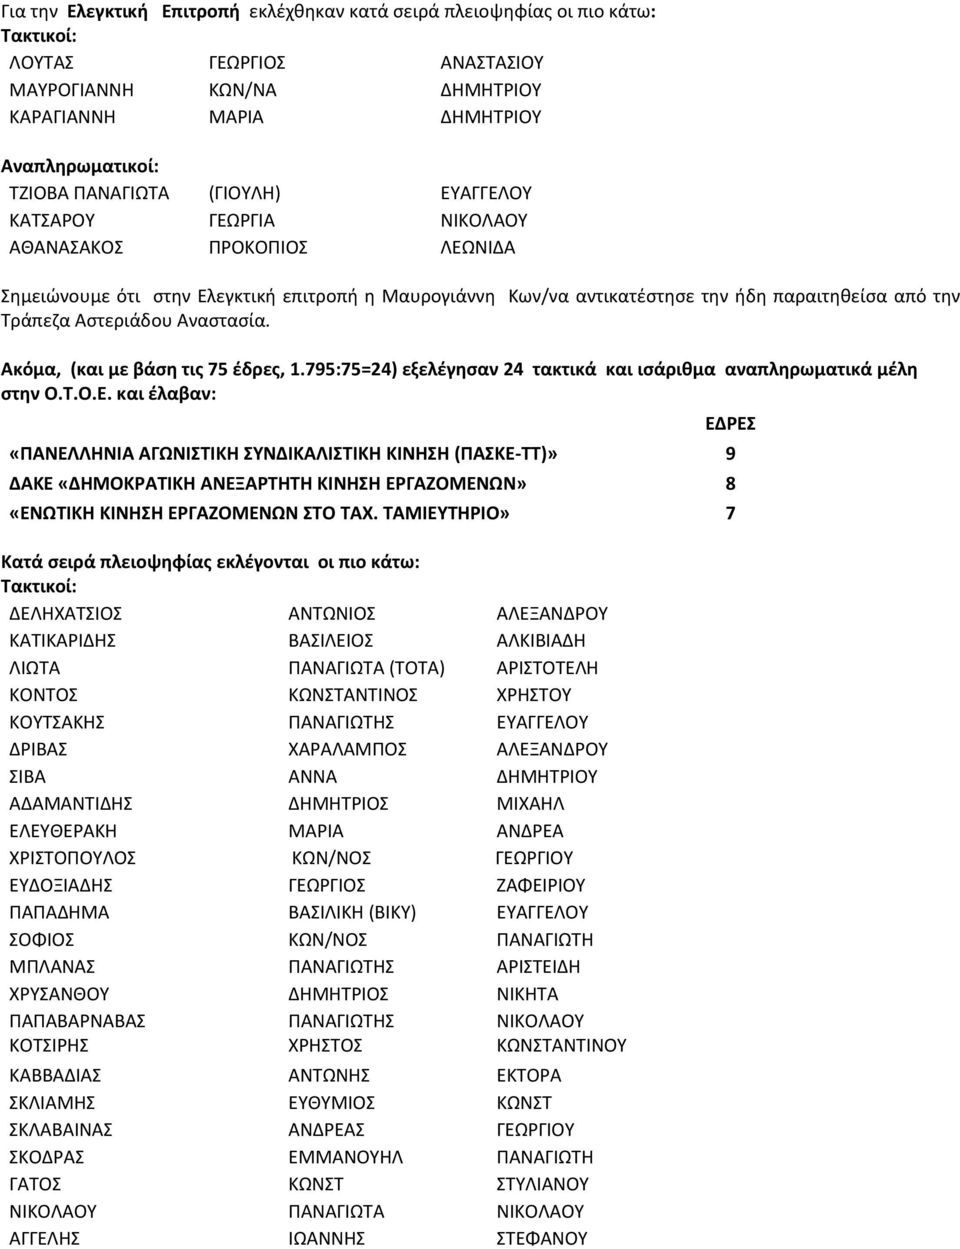 Αστεριάδου Αναστασία. Ακόμα, (και με βάση τις 75 έδρες, 1.795:75=24) εξελέγησαν 24 τακτικά και ισάριθμα αναπληρωματικά μέλη στην Ο.Τ.Ο.Ε.